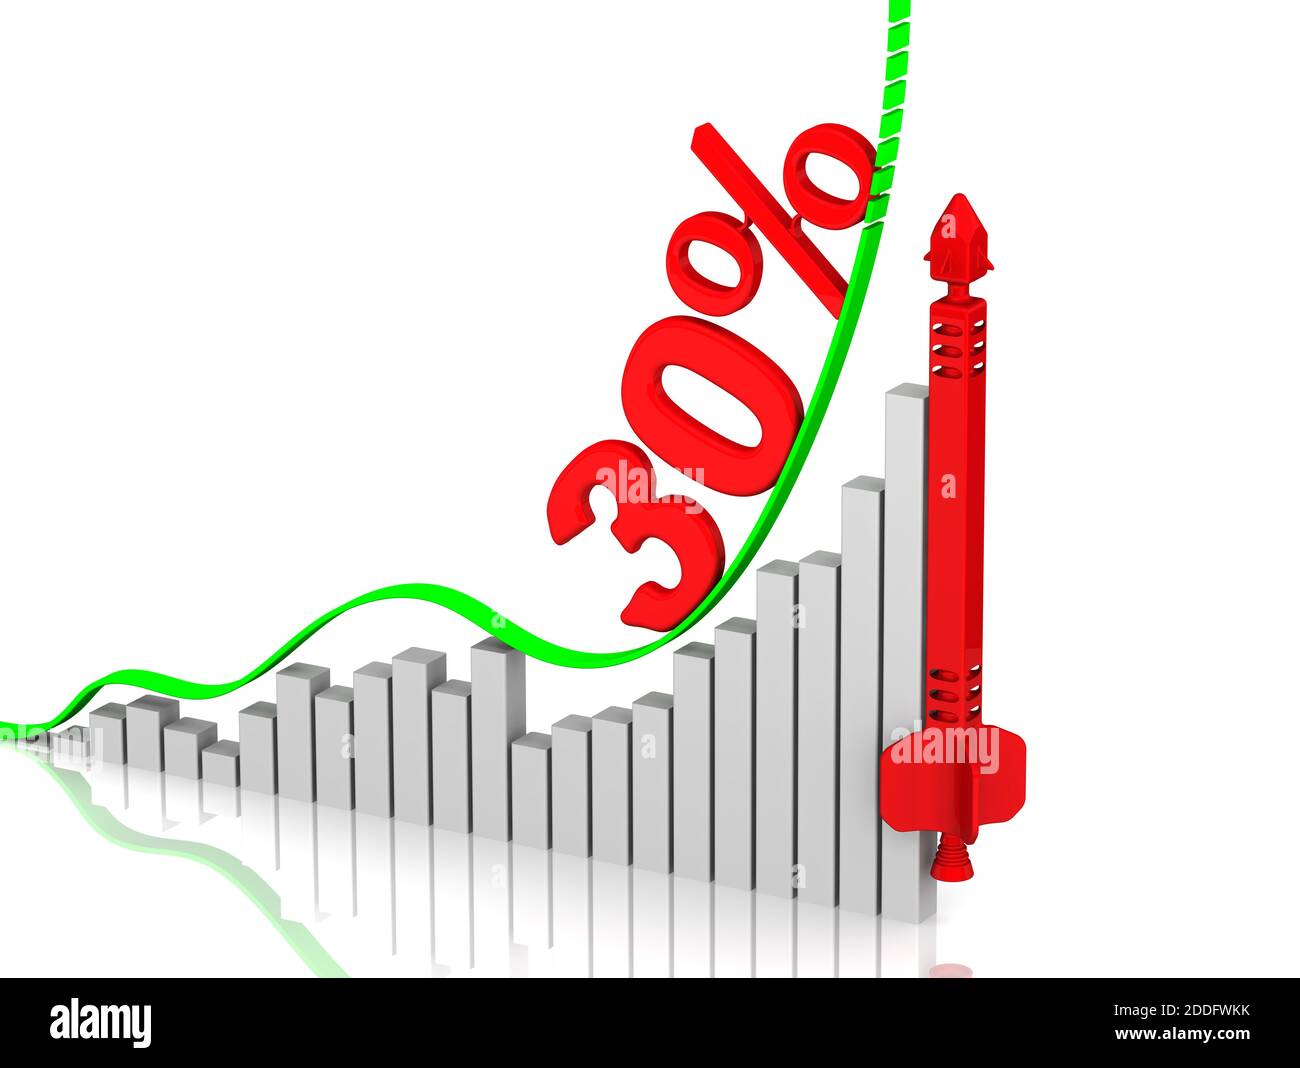 Crescita di trenta percentuali. Grafico di rapida crescita con iscrizione 30% (trenta percentuali) e razzo rosso concettuale. Concetto finanziario Foto Stock